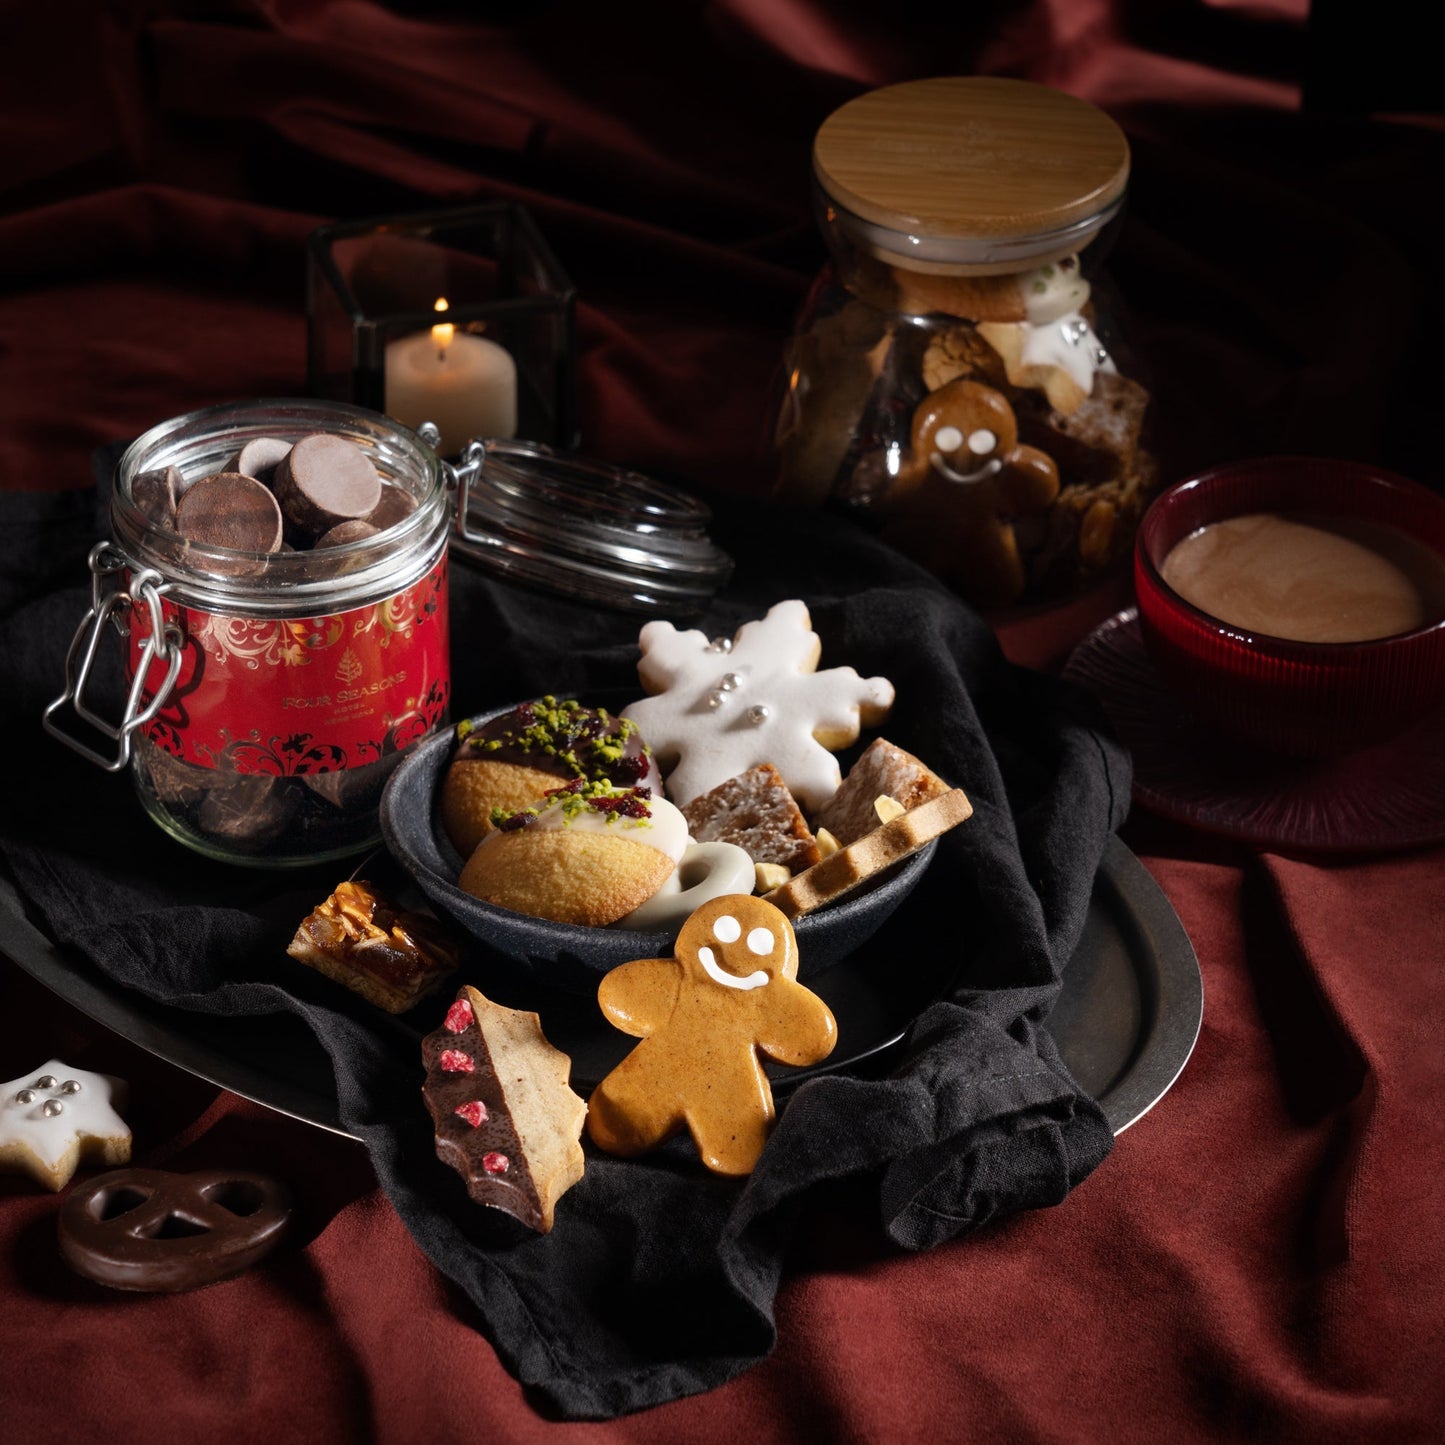 Four Seasons Hong Kong Hot Chocolate and Christmas Cookies Gift Bag Set (200g) 四季熱朱古力及聖誕餅乾套裝 (200g)